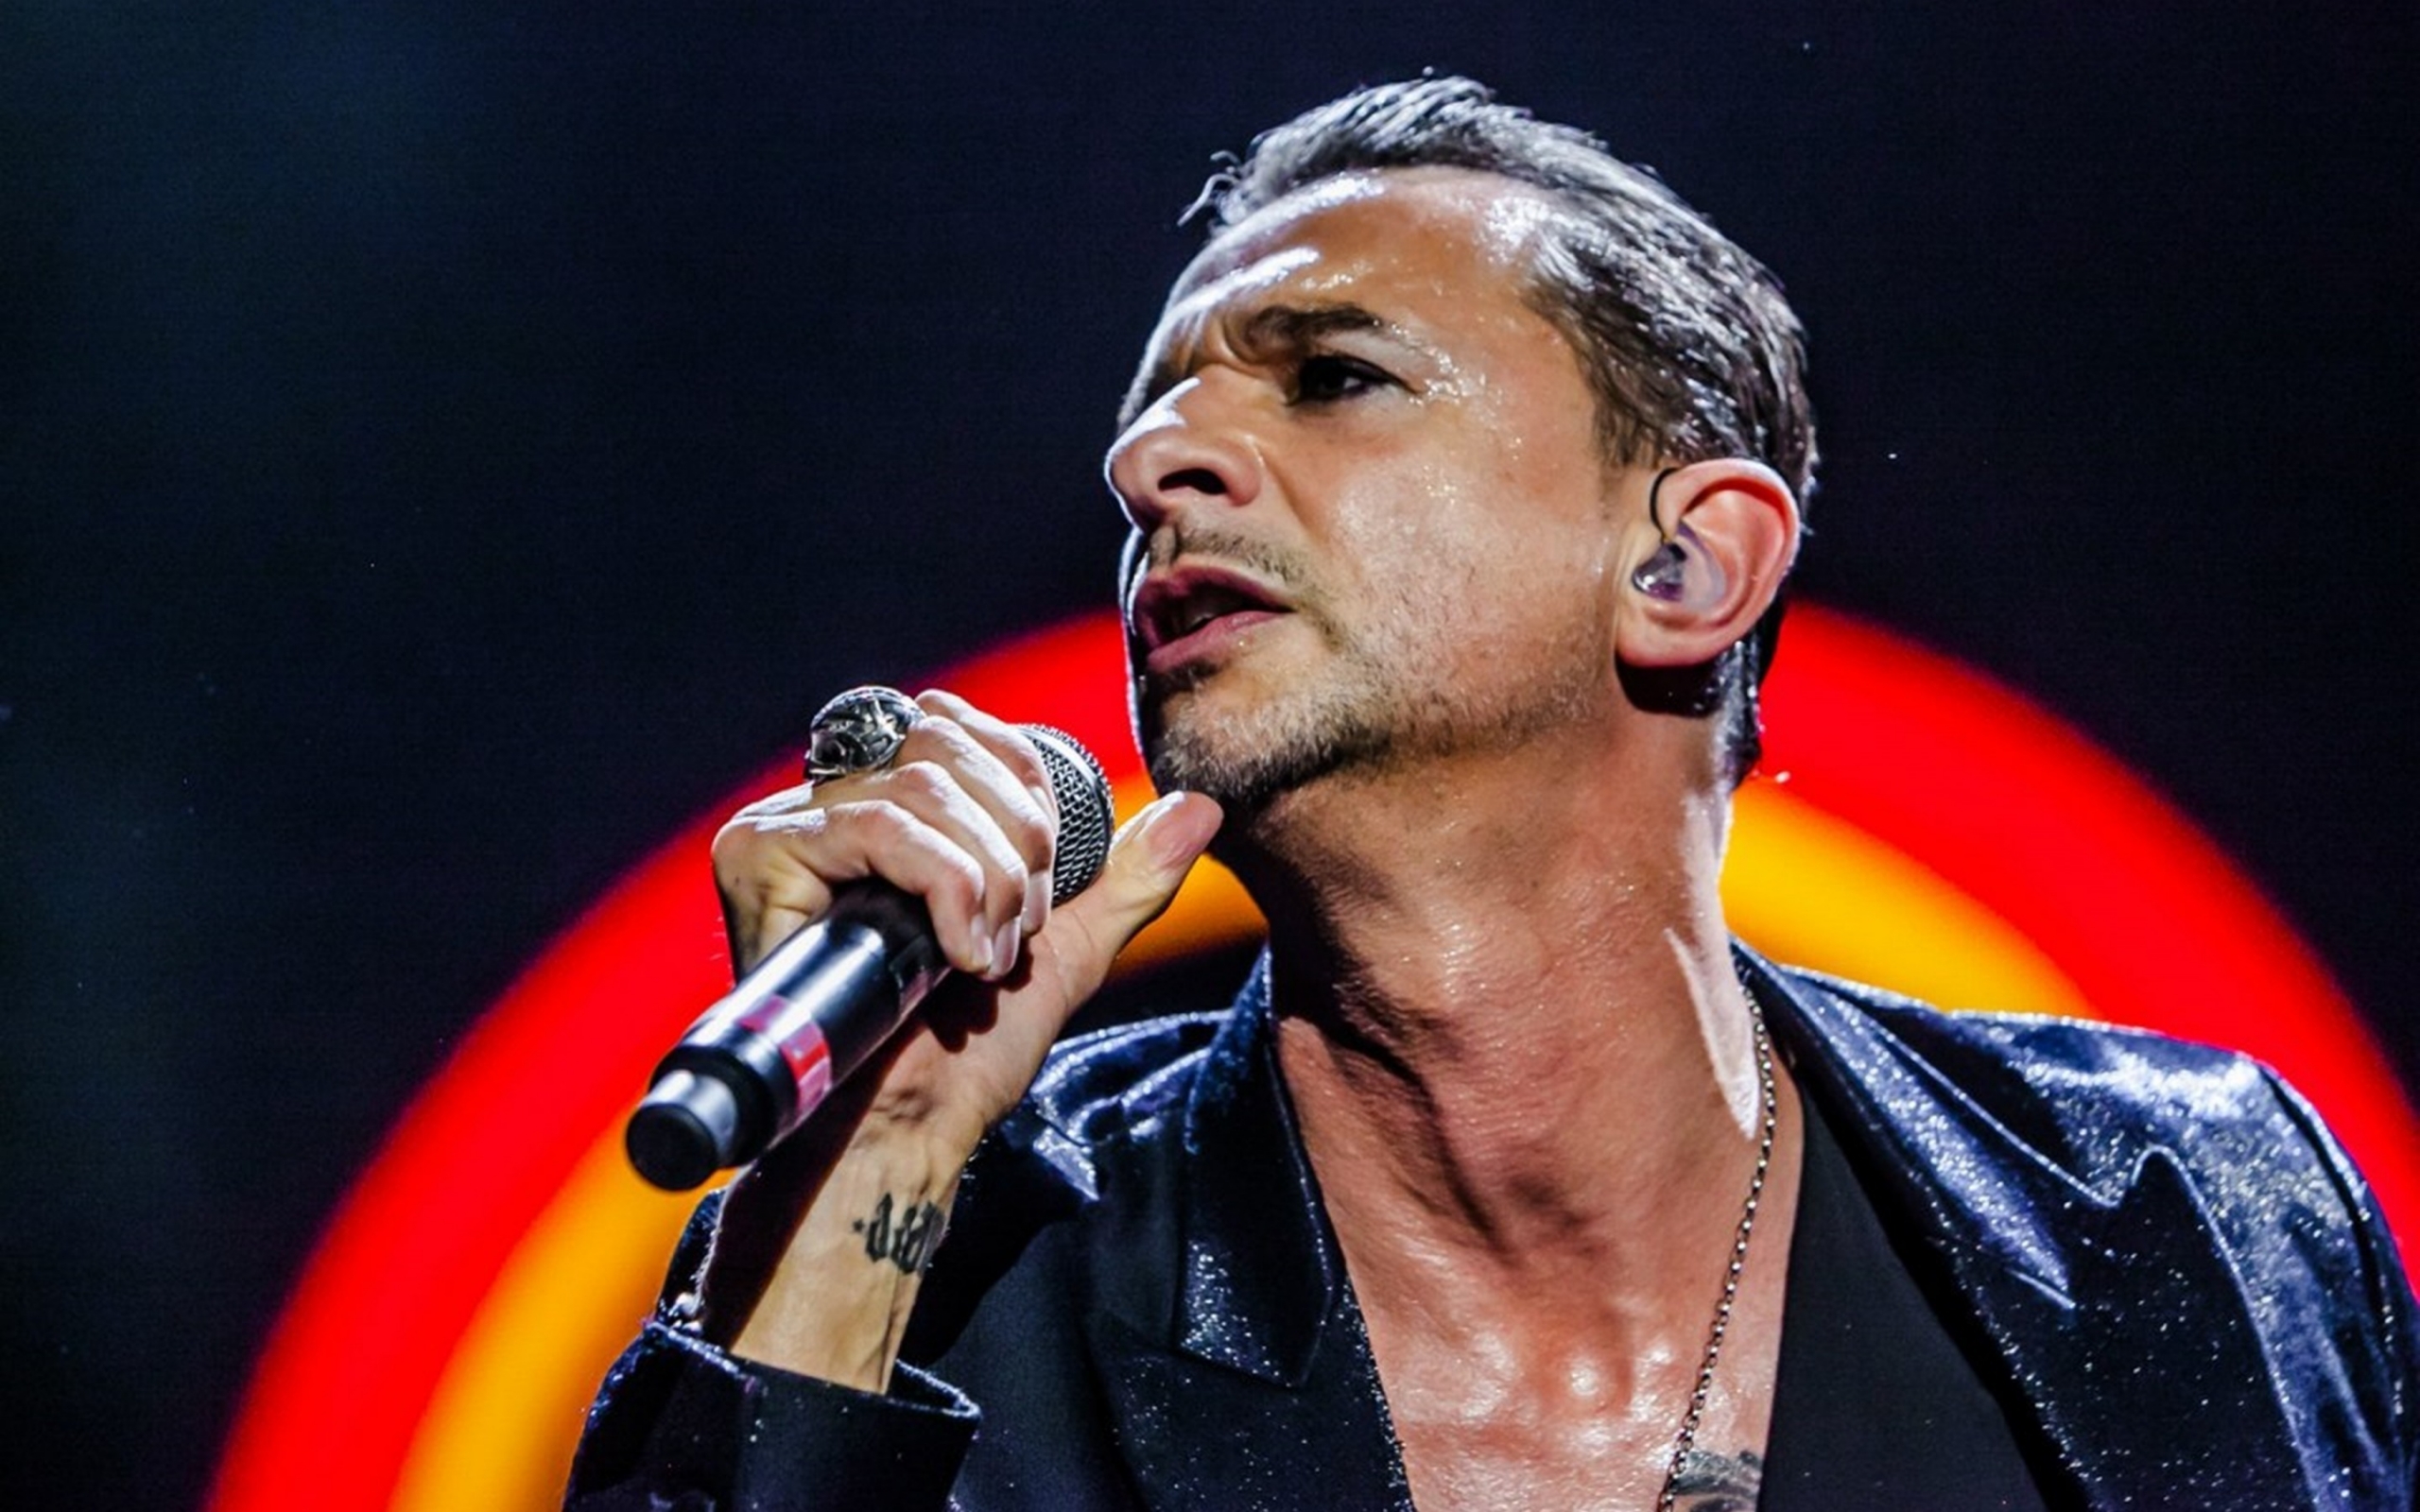 David Gahan Depeche Mode for 2560 x 1600 widescreen resolution